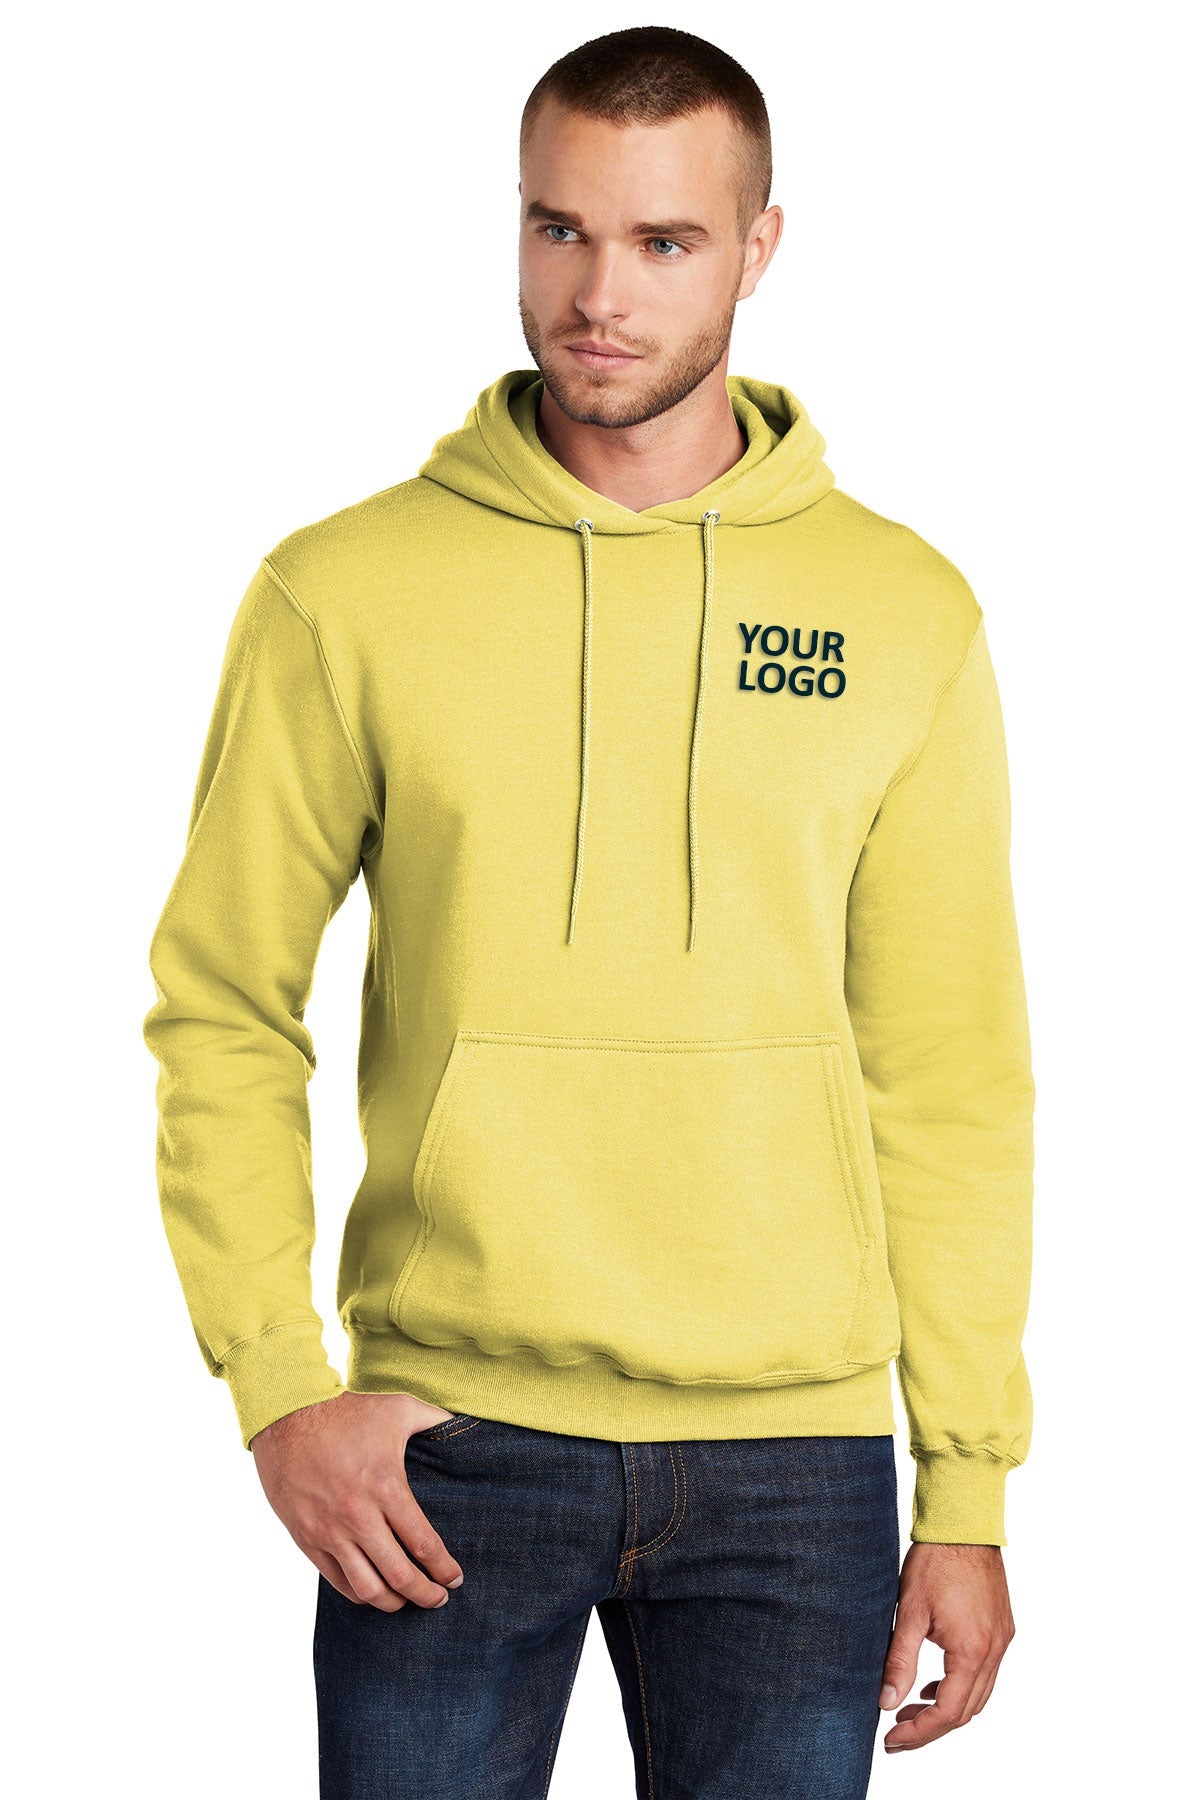 Port & Company Core Fleece Branded Hoodies, Yellow